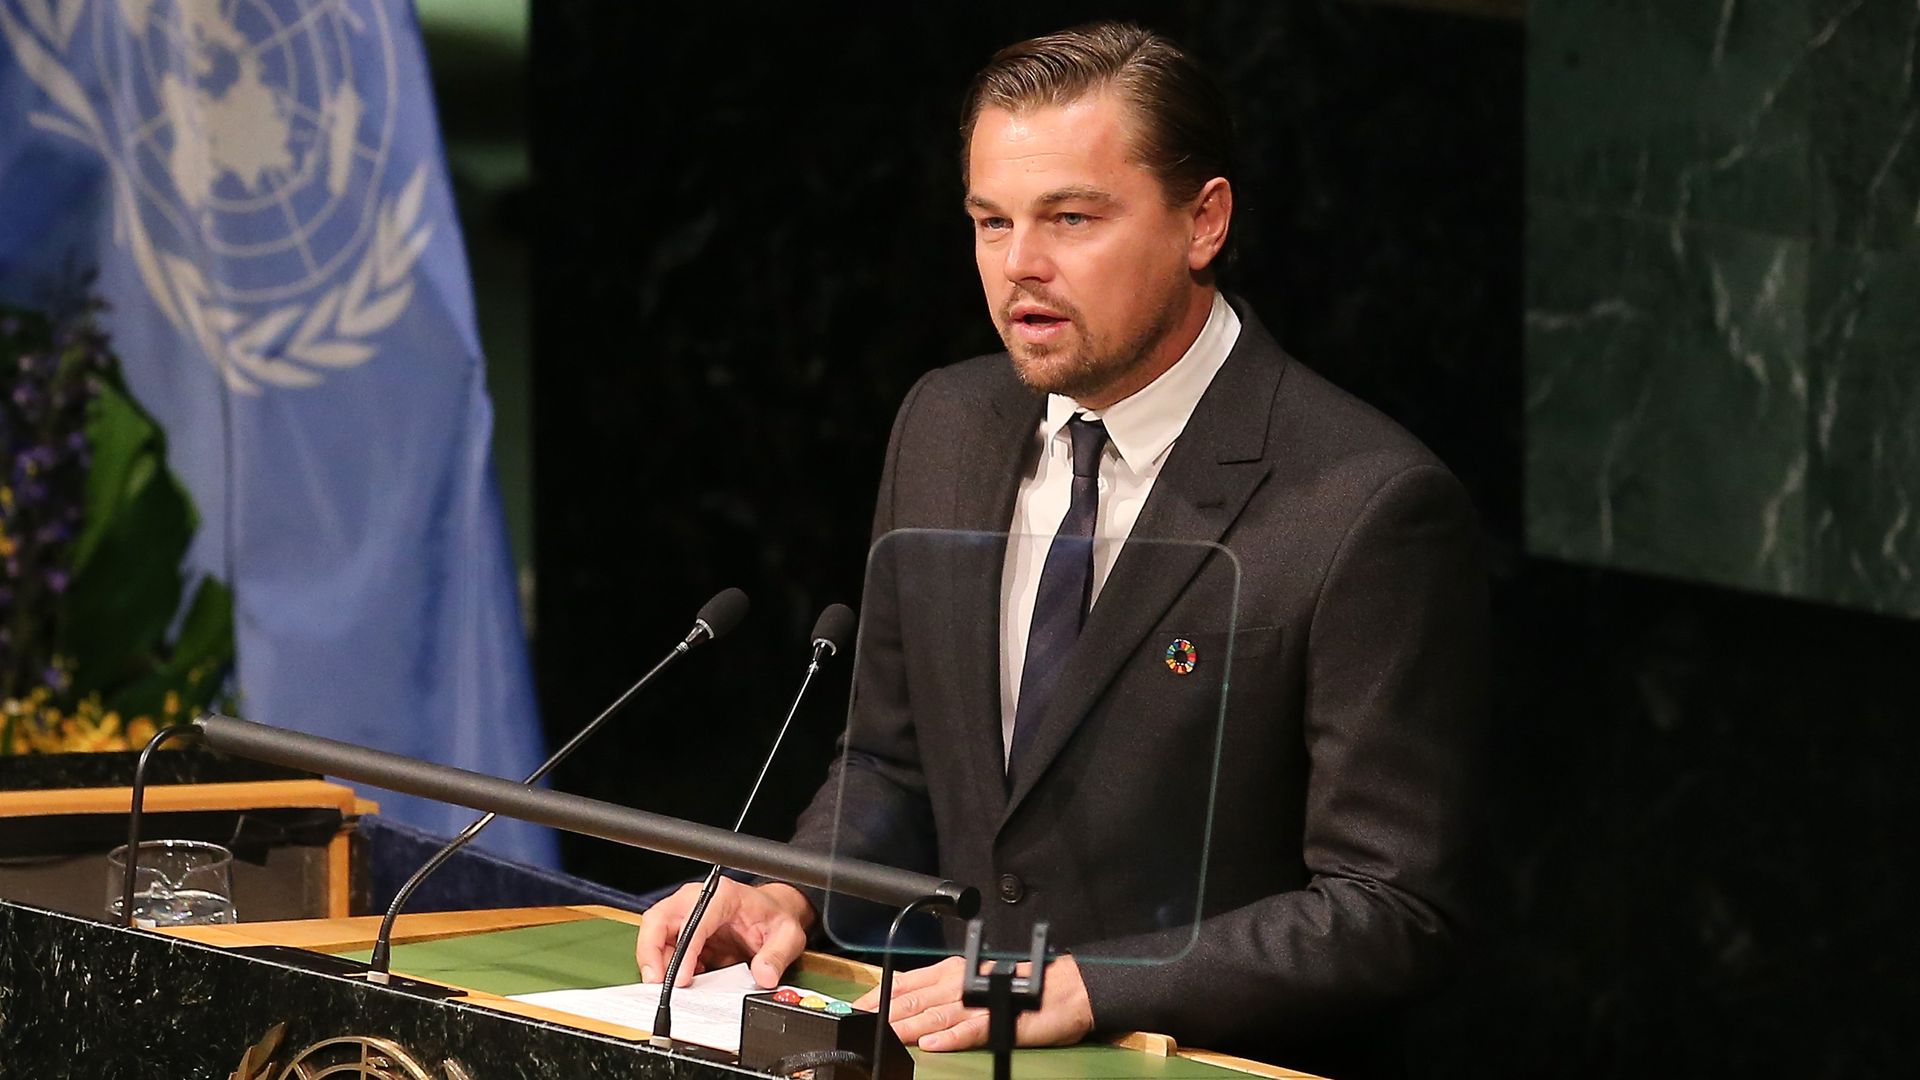 Leo DiCaprio at the UN